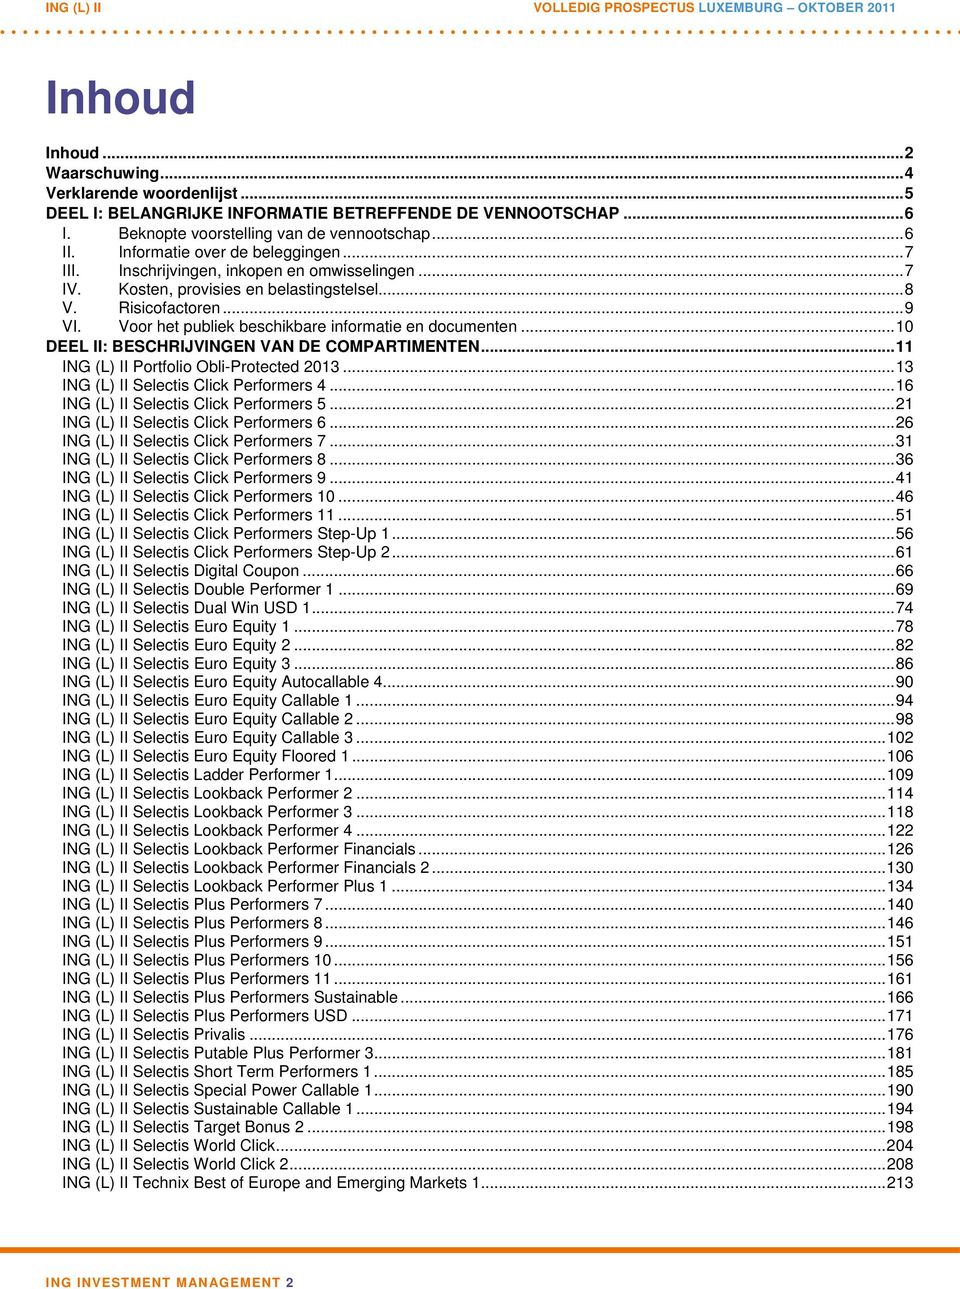 Voor het publiek beschikbare informatie en documenten...10 DEEL II: BESCHRIJVINGEN VAN DE COMPARTIMENTEN...11 ING (L) II Portfolio Obli-Protected 2013...13 ING (L) II Selectis Click Performers 4.